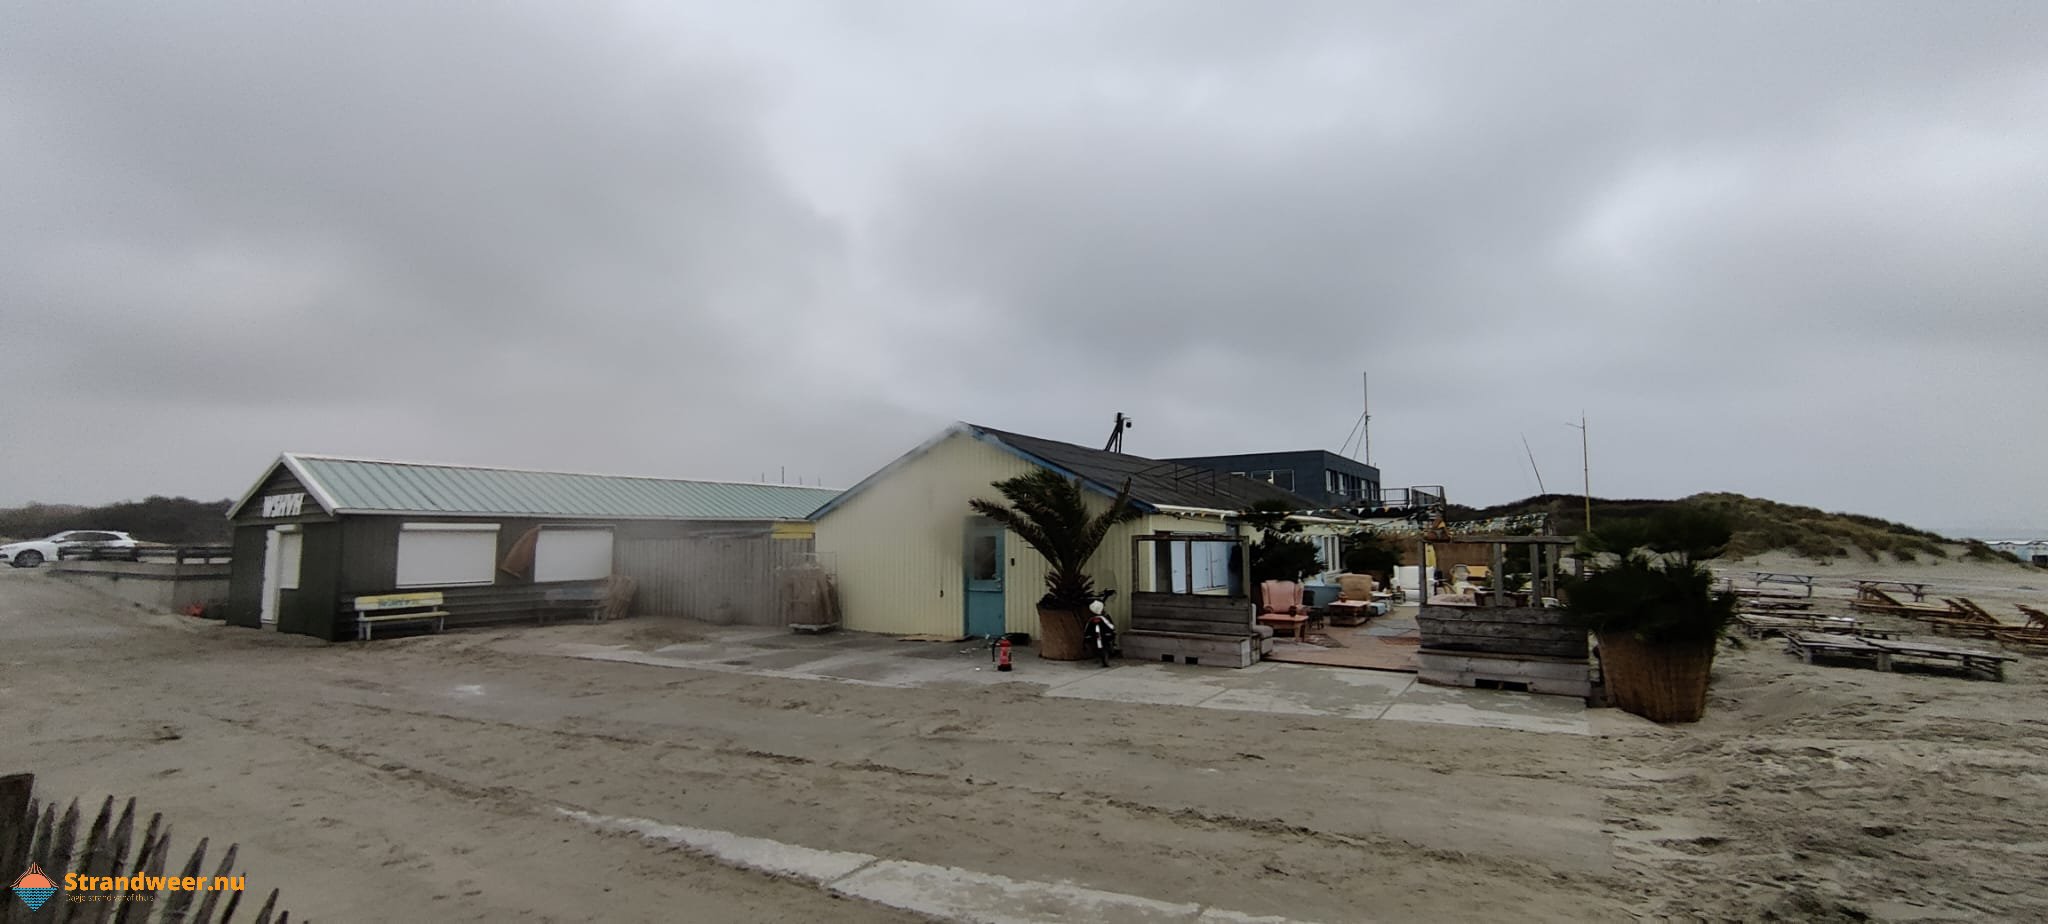 Strandpaviljoen gesloten na middelbrand